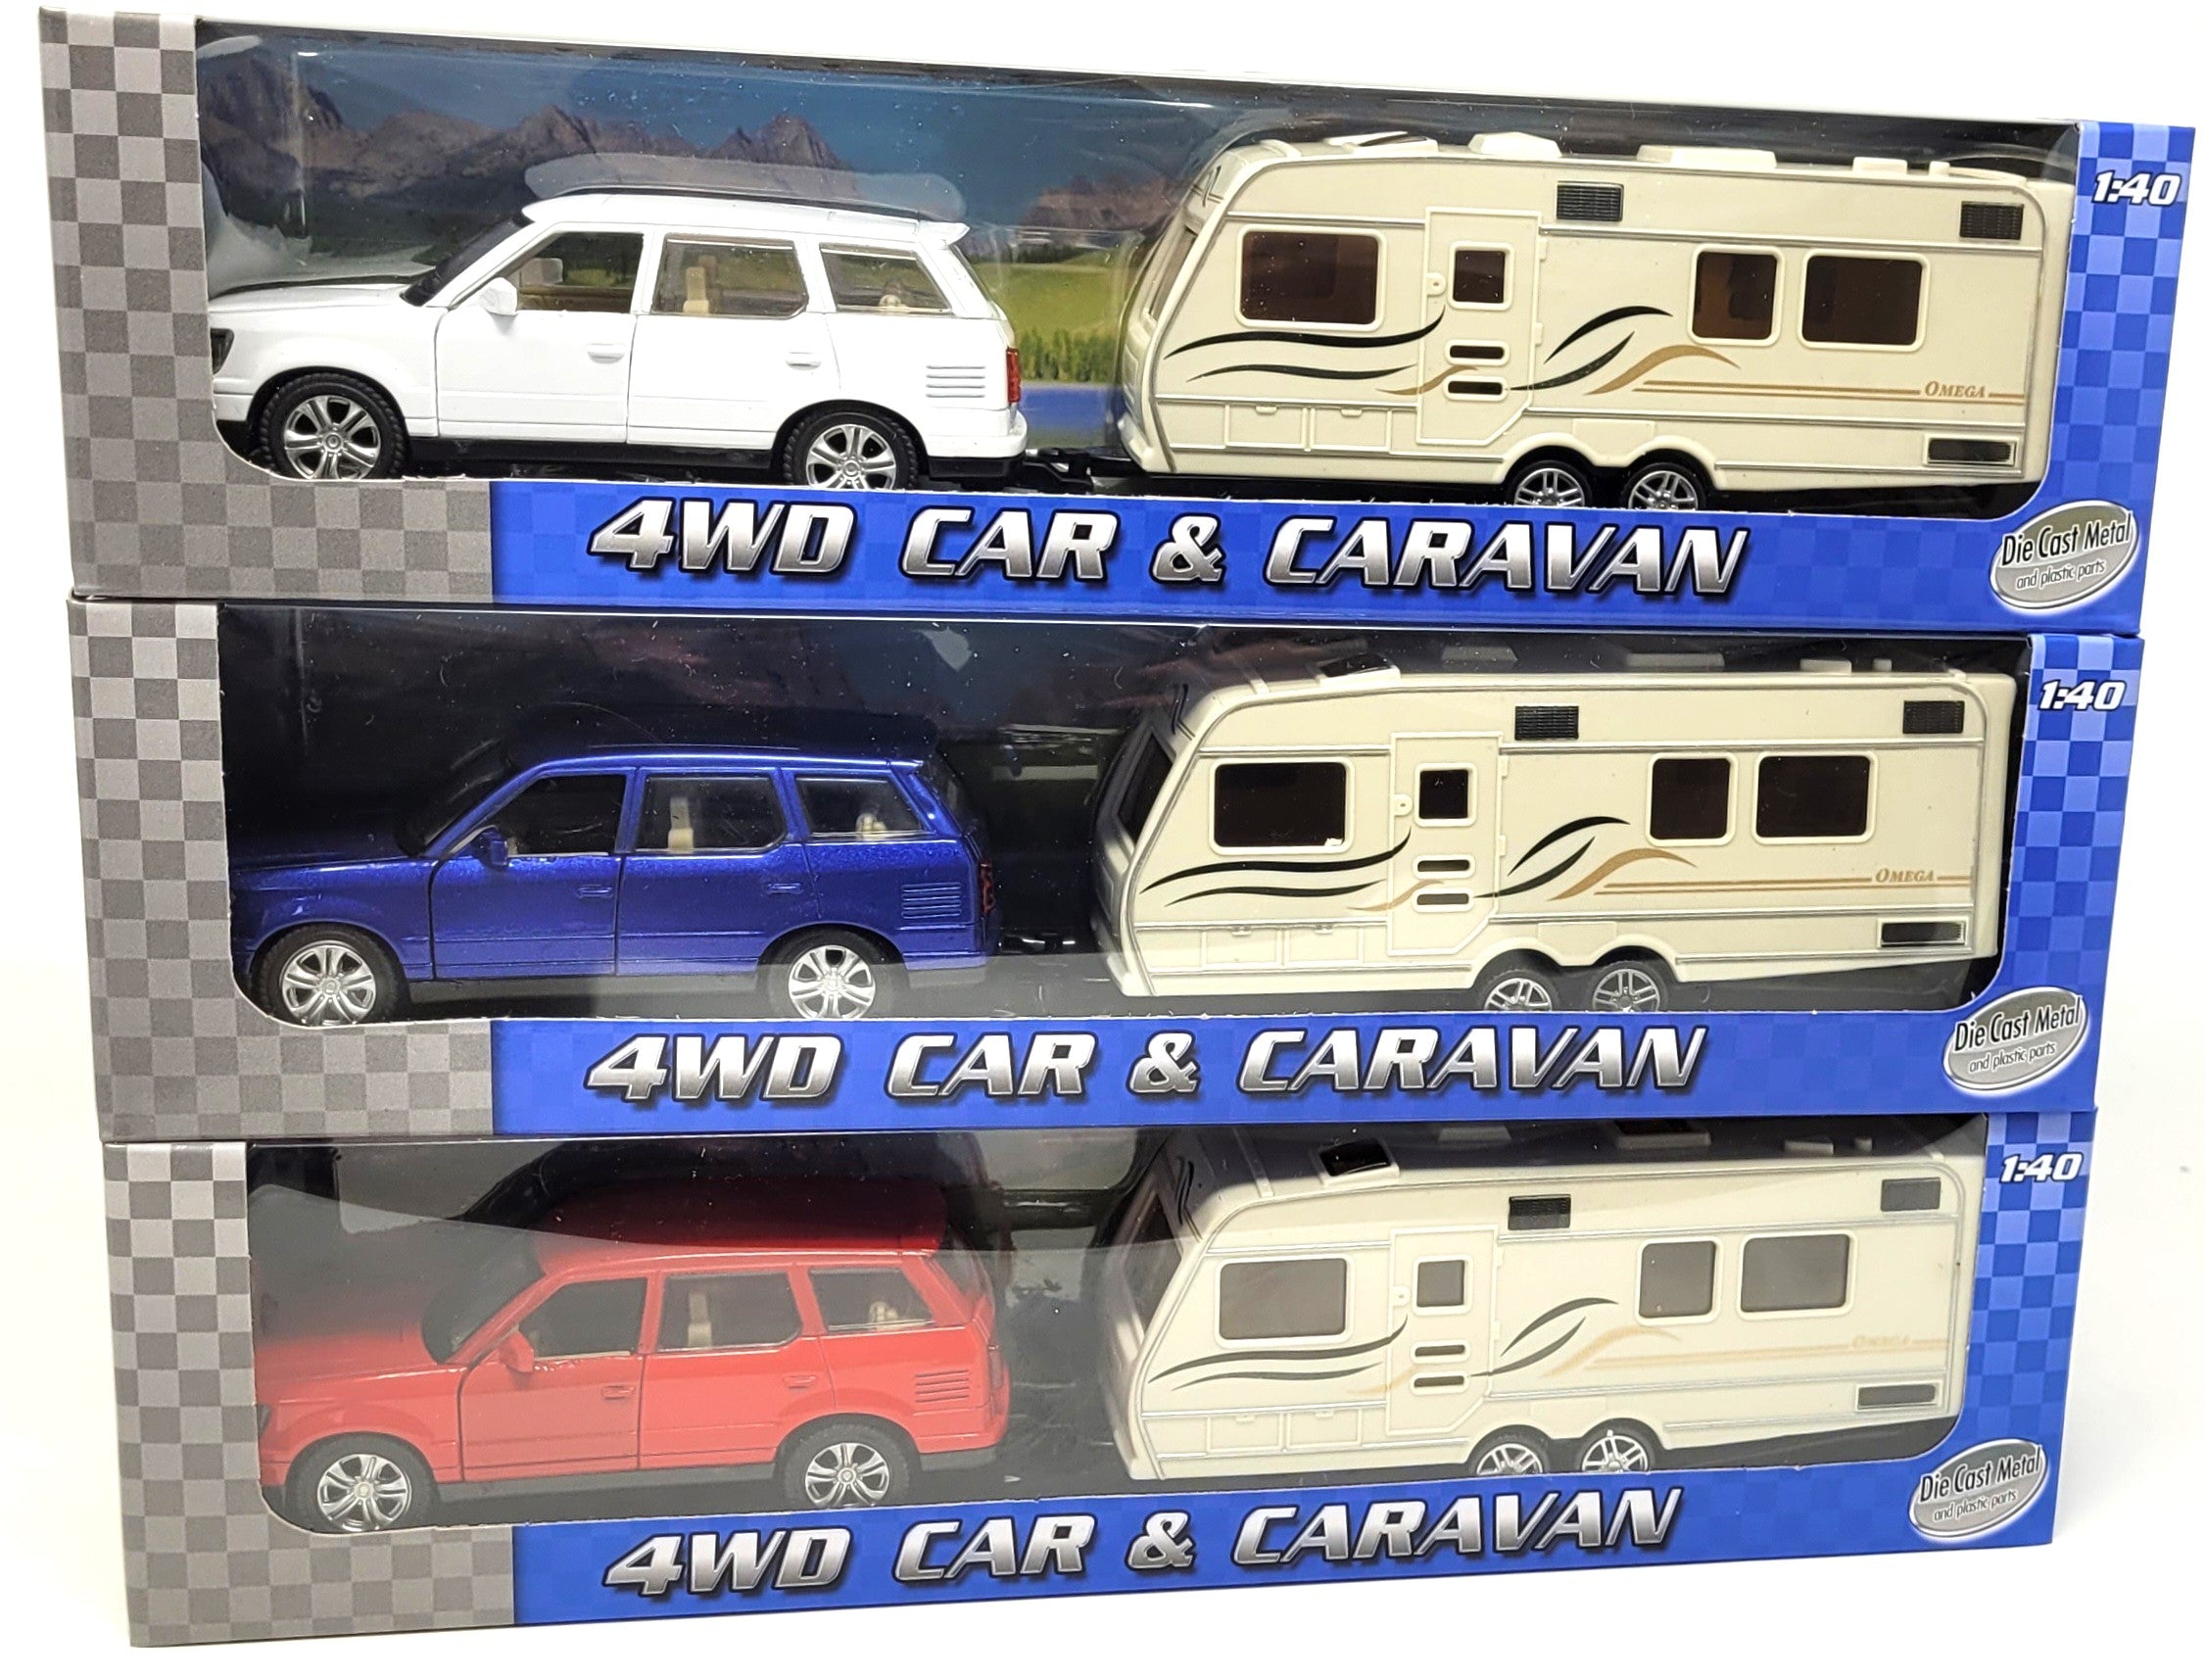 Tranzmasters 4WD Car & Caravan Toy